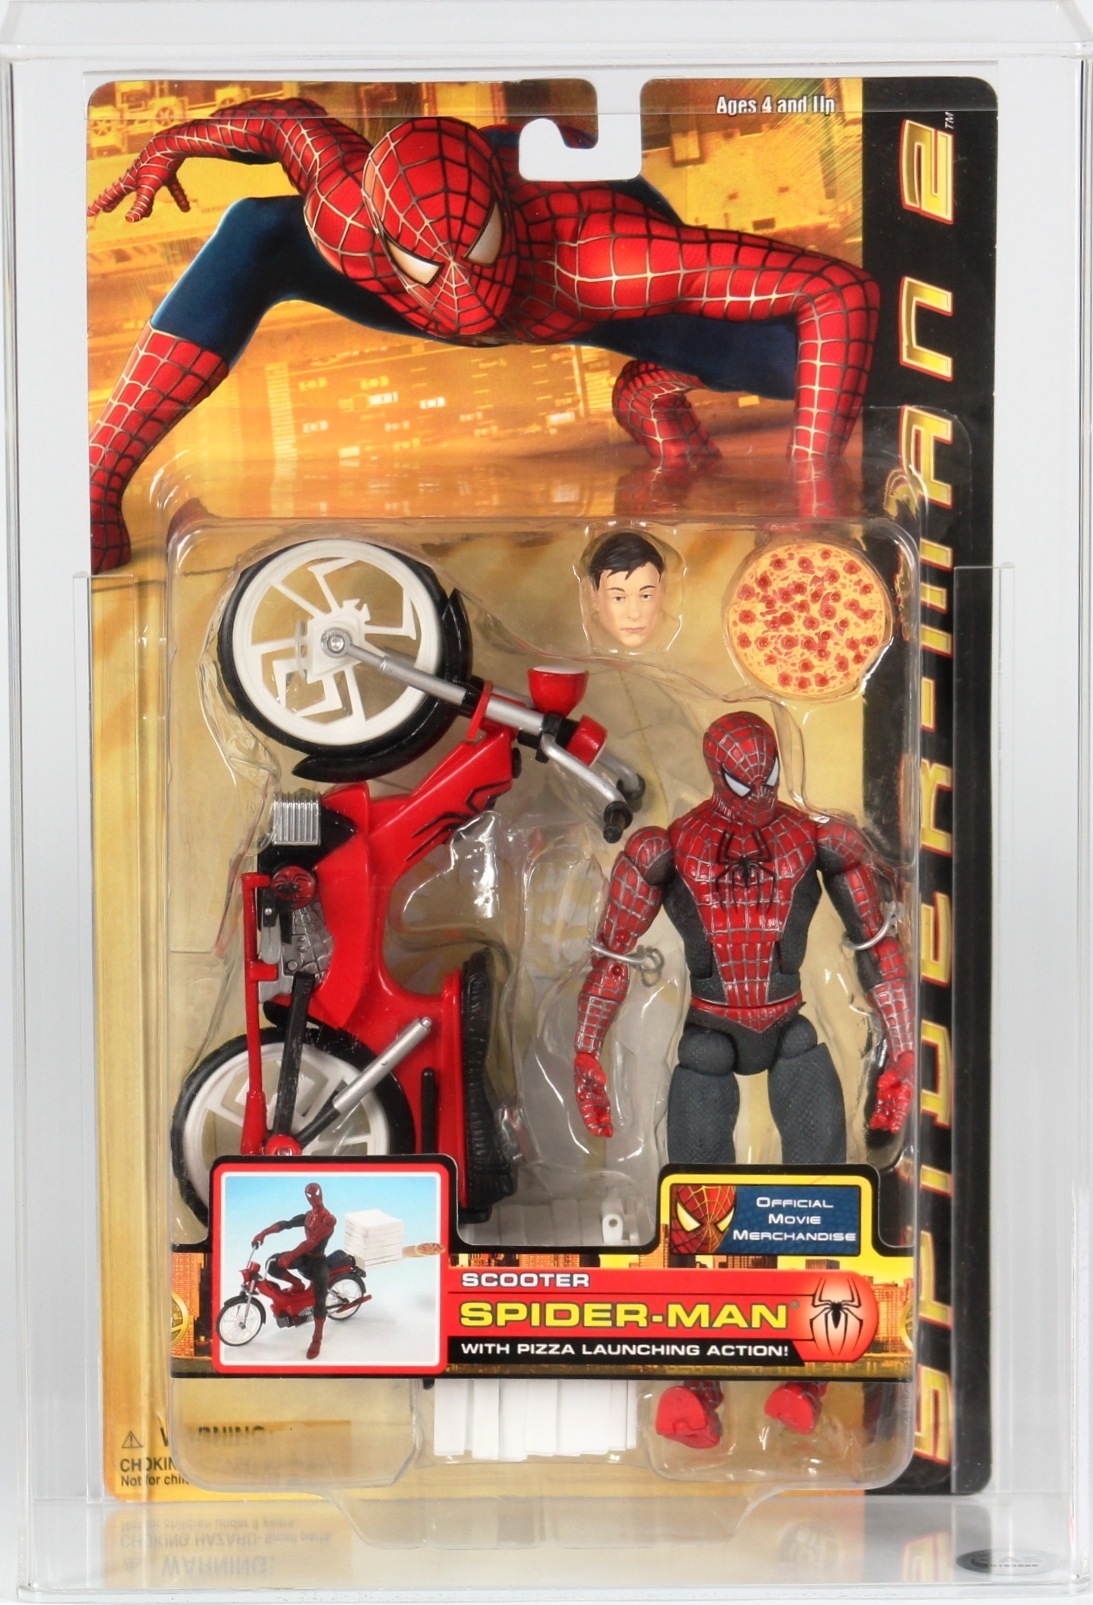 2004 Toy Biz Spider-Man 2 Movie Carded Action Figure - Spider-Man (Scooter)